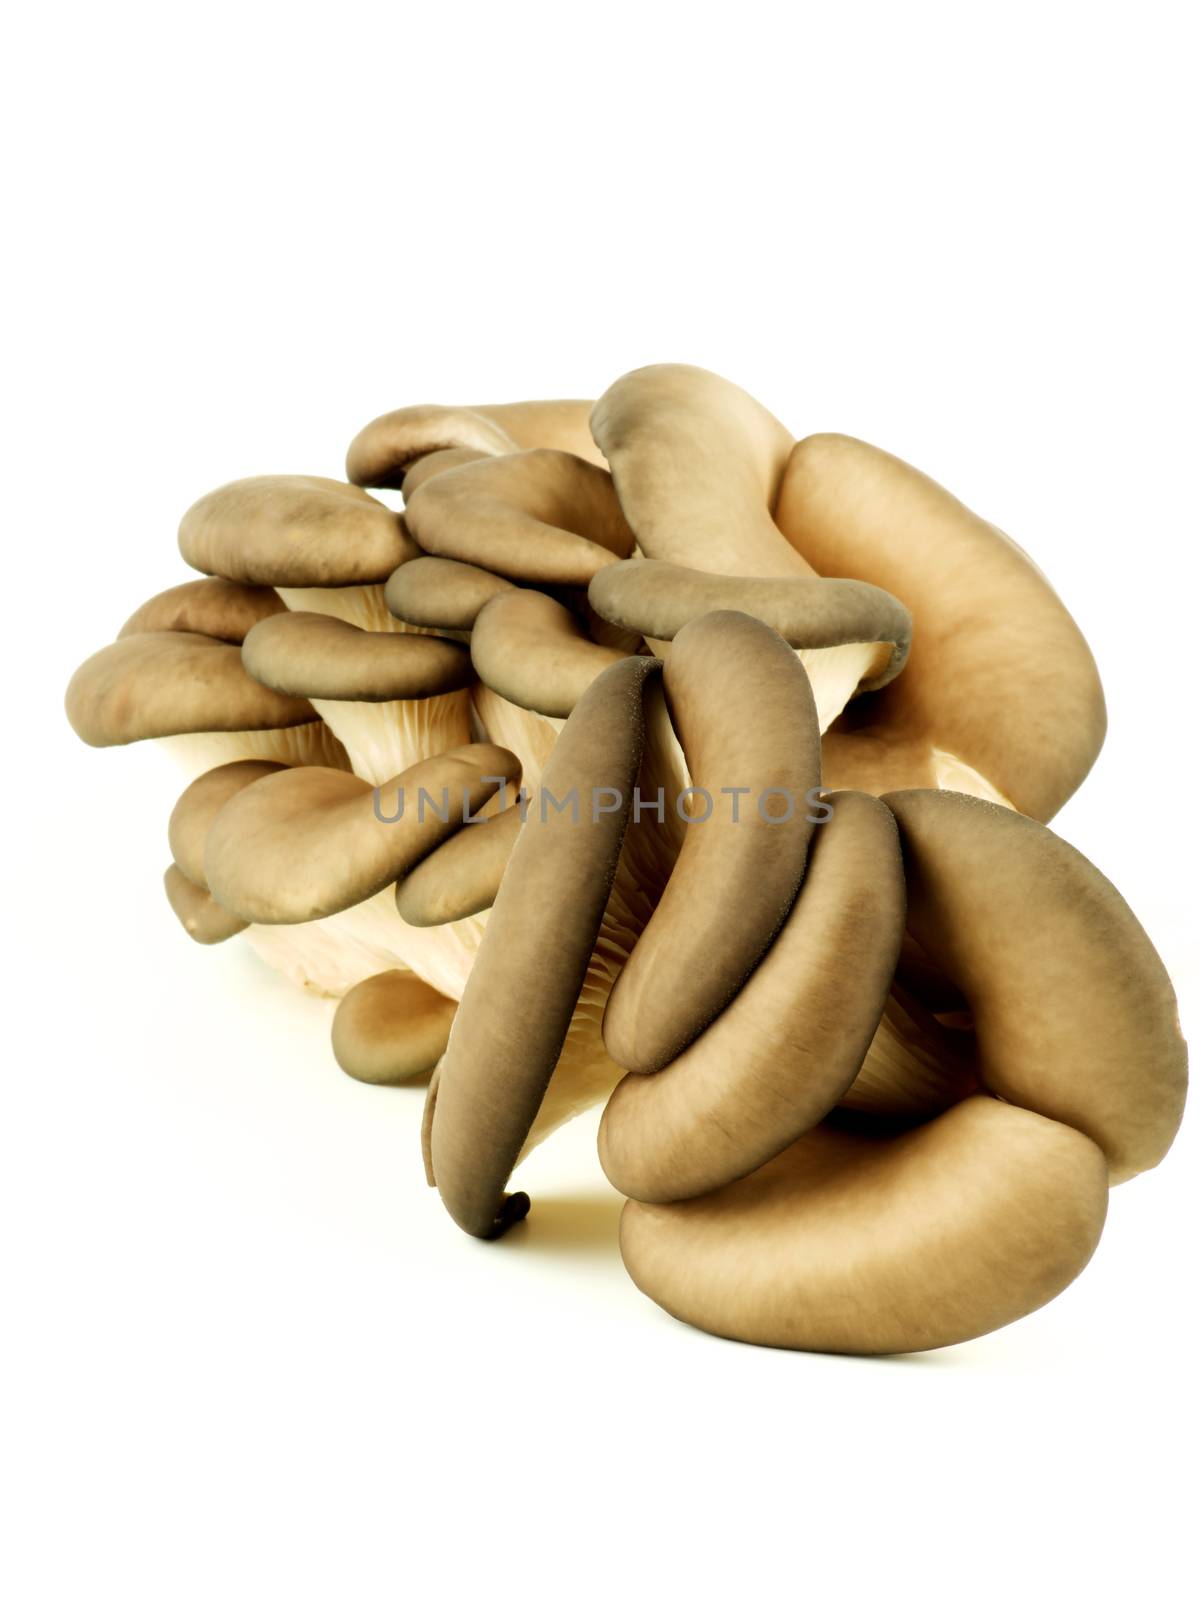 Raw Oyster Mushrooms by zhekos